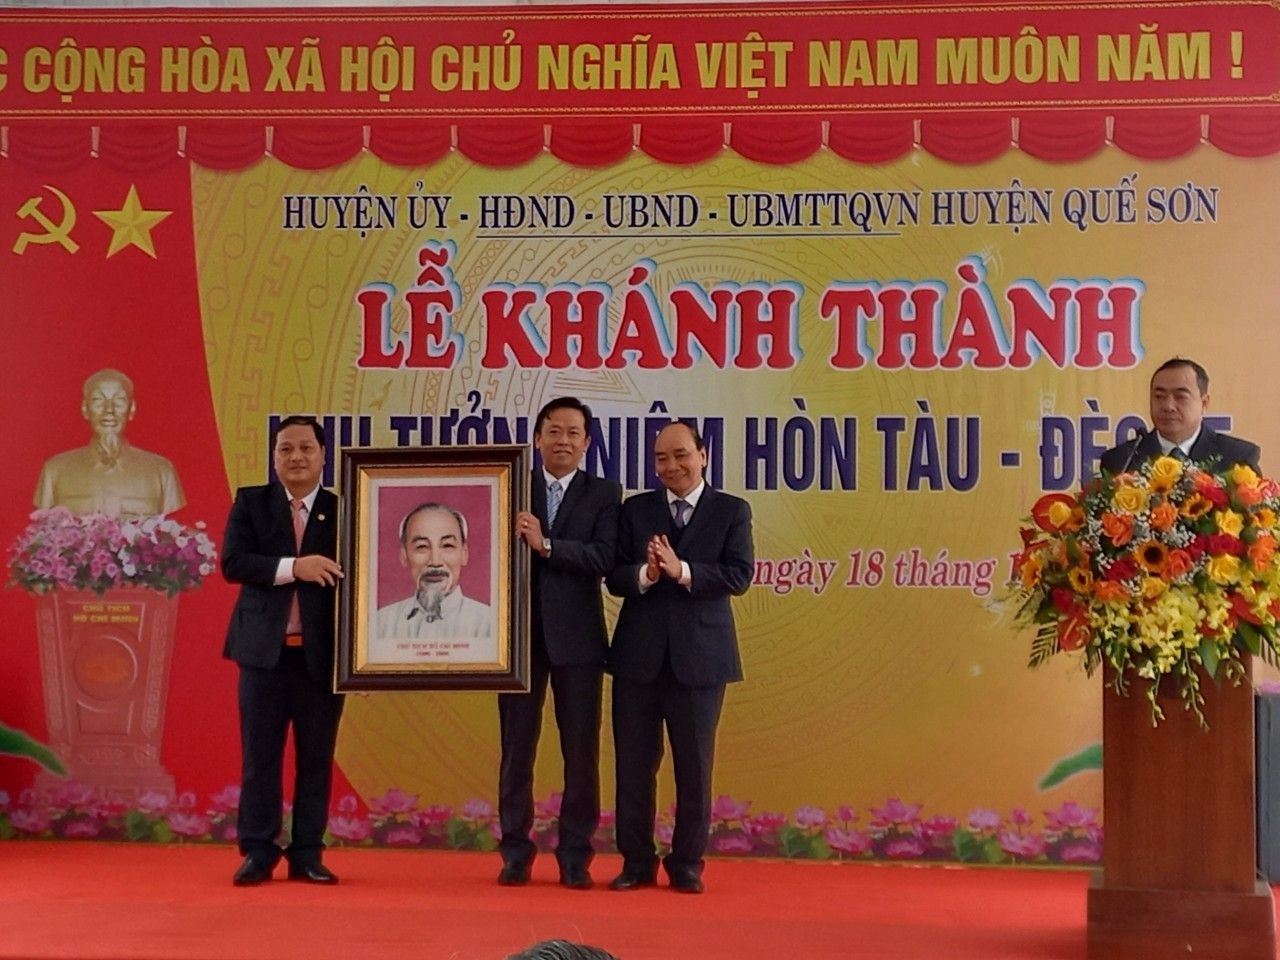 Chủ tịch nước Nguyễn Xuân Phúc tặng chân dung Chủ tịch Hồ Chí Minh cho huyện Quế Sơn. Ảnh: Thống Nhất/TTXVN.